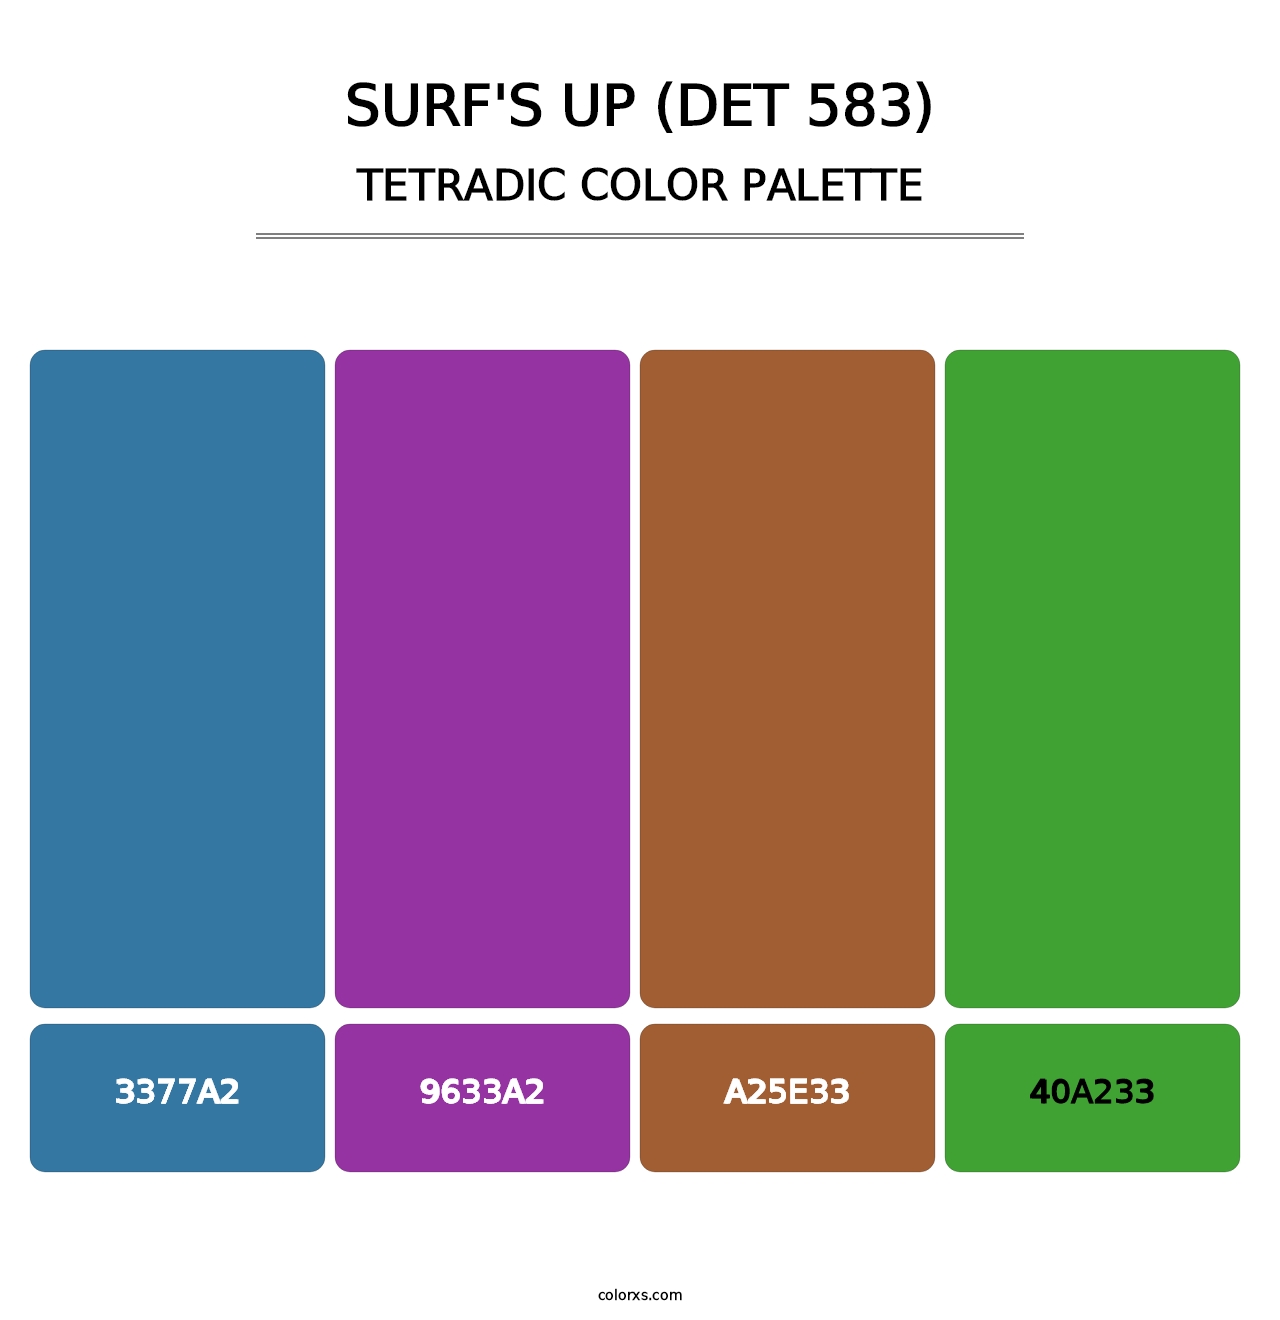 Surf's Up (DET 583) - Tetradic Color Palette